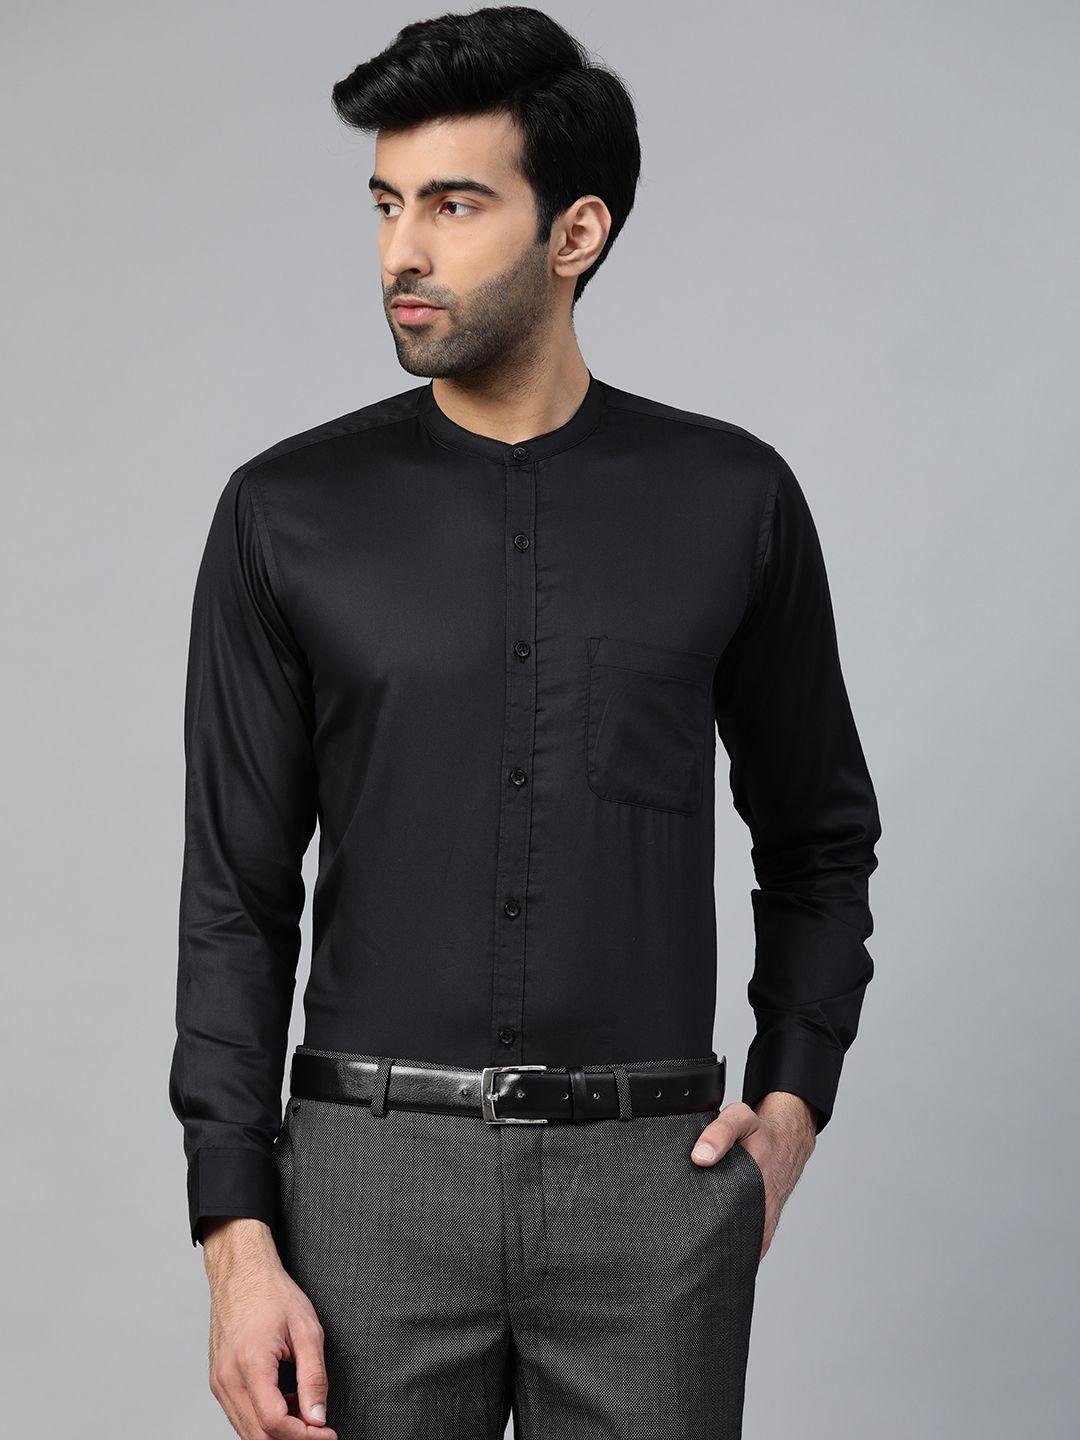 dennison men black smart slim fit solid twill formal shirt